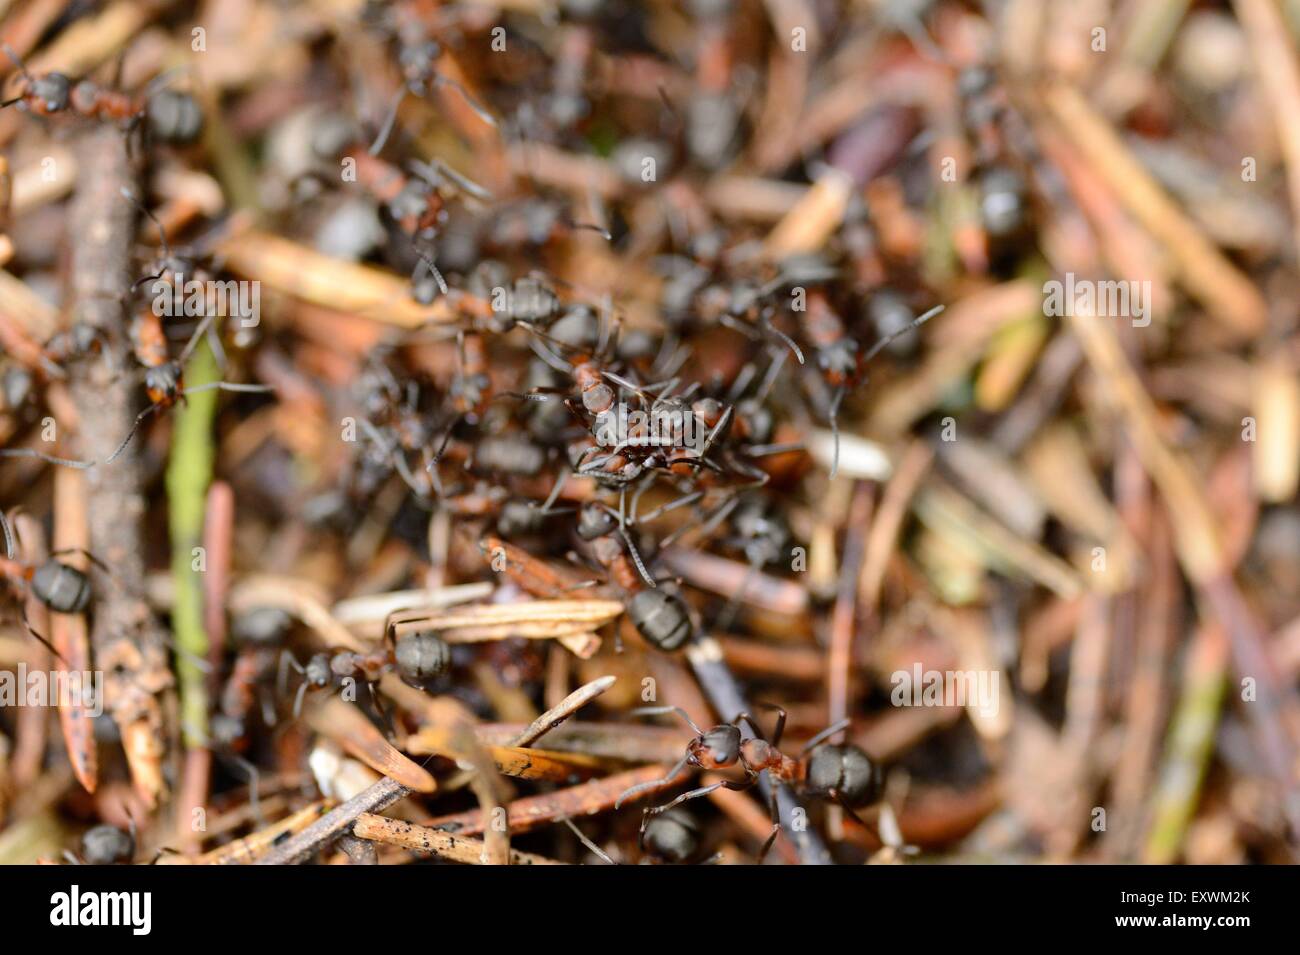 Las hormigas en un hormiguero de madera Foto de stock